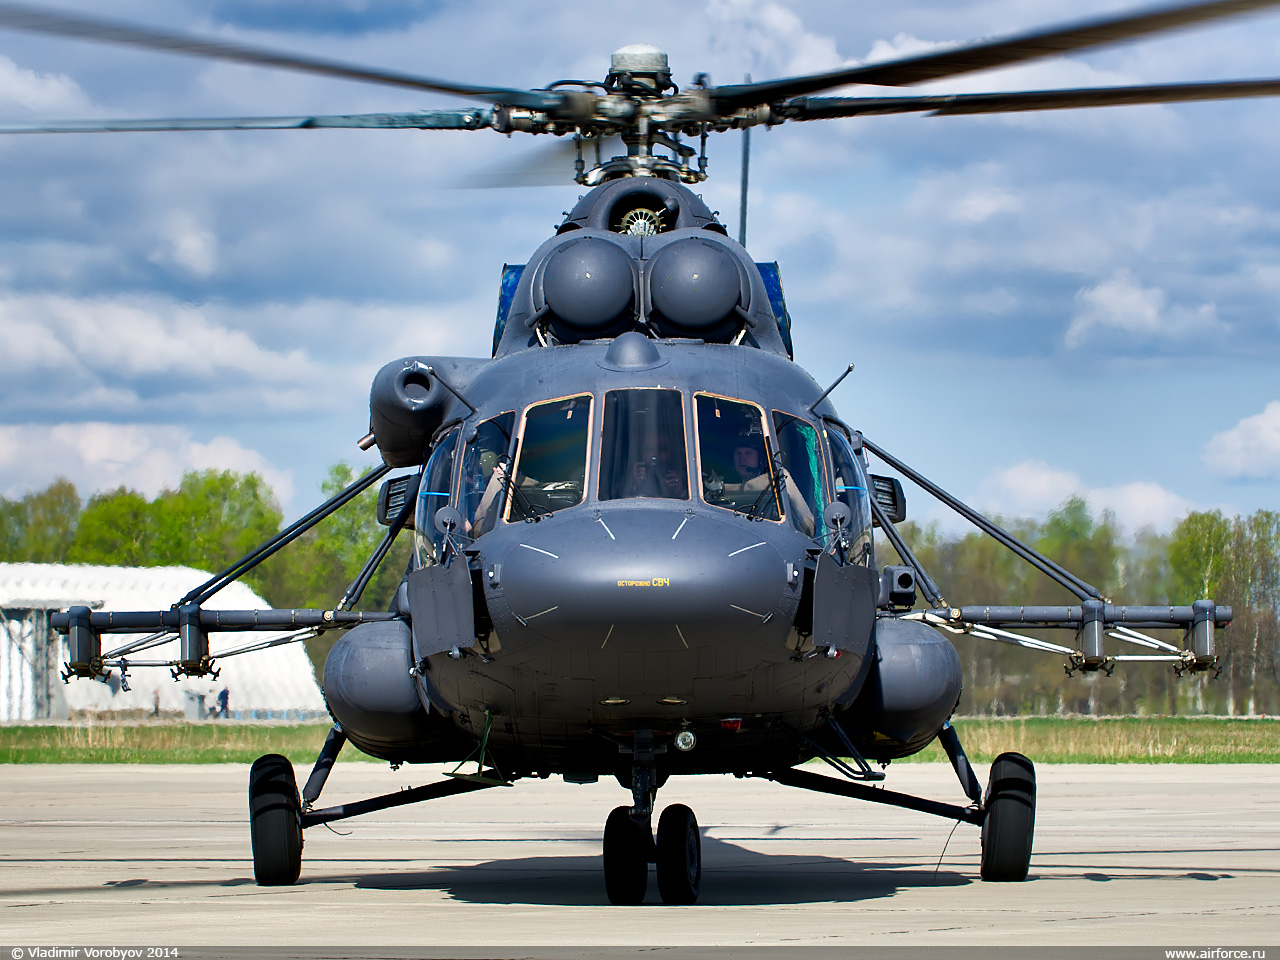 Эволюция вертолётов России: каким будет усовершенствованный Ми-8МТВ-5-1